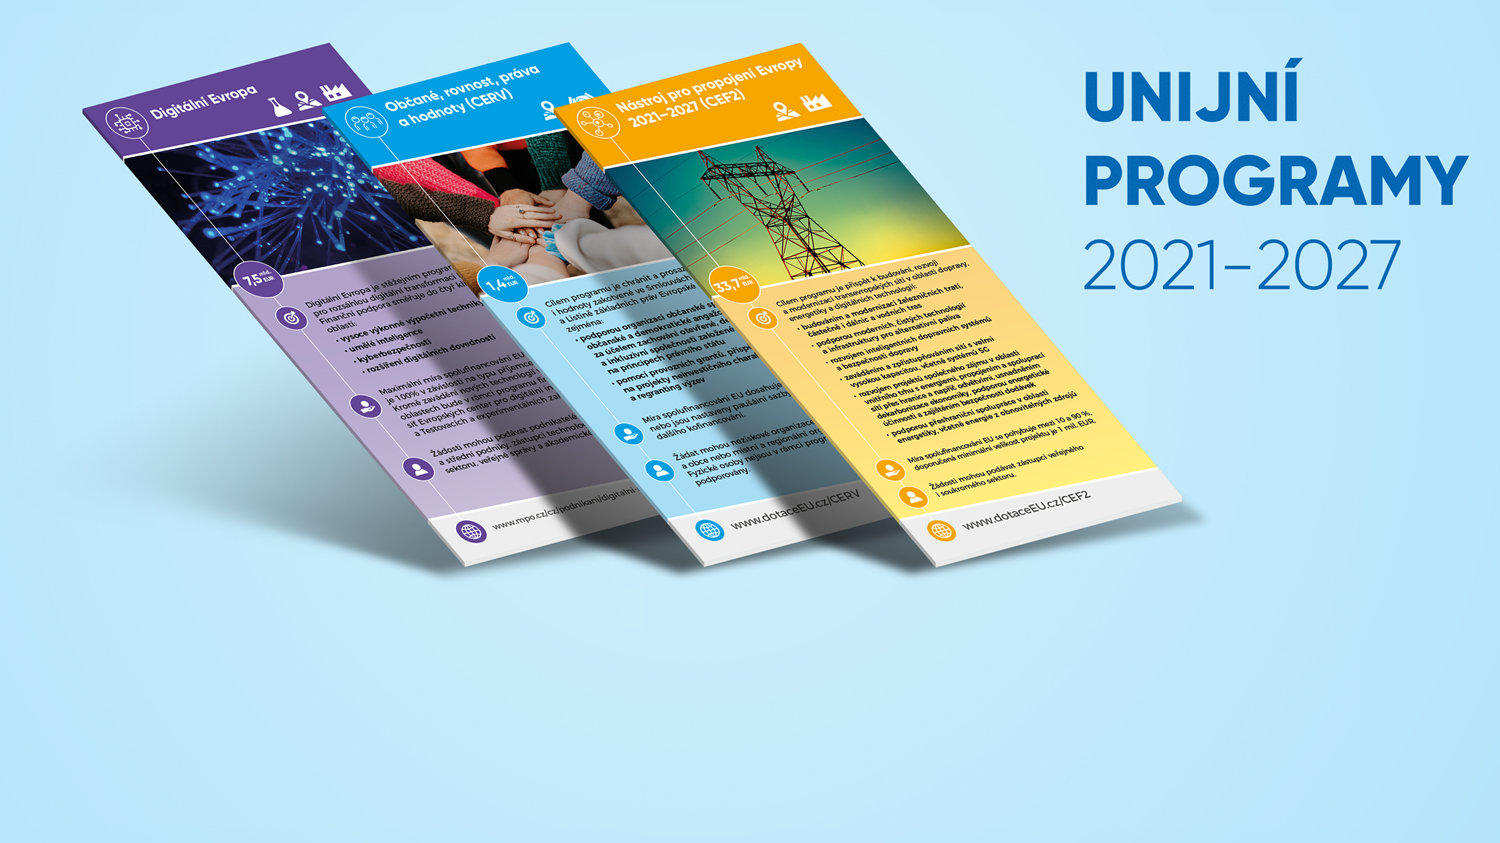 Letáky: Unijní programy 2021-2027 přehledně 